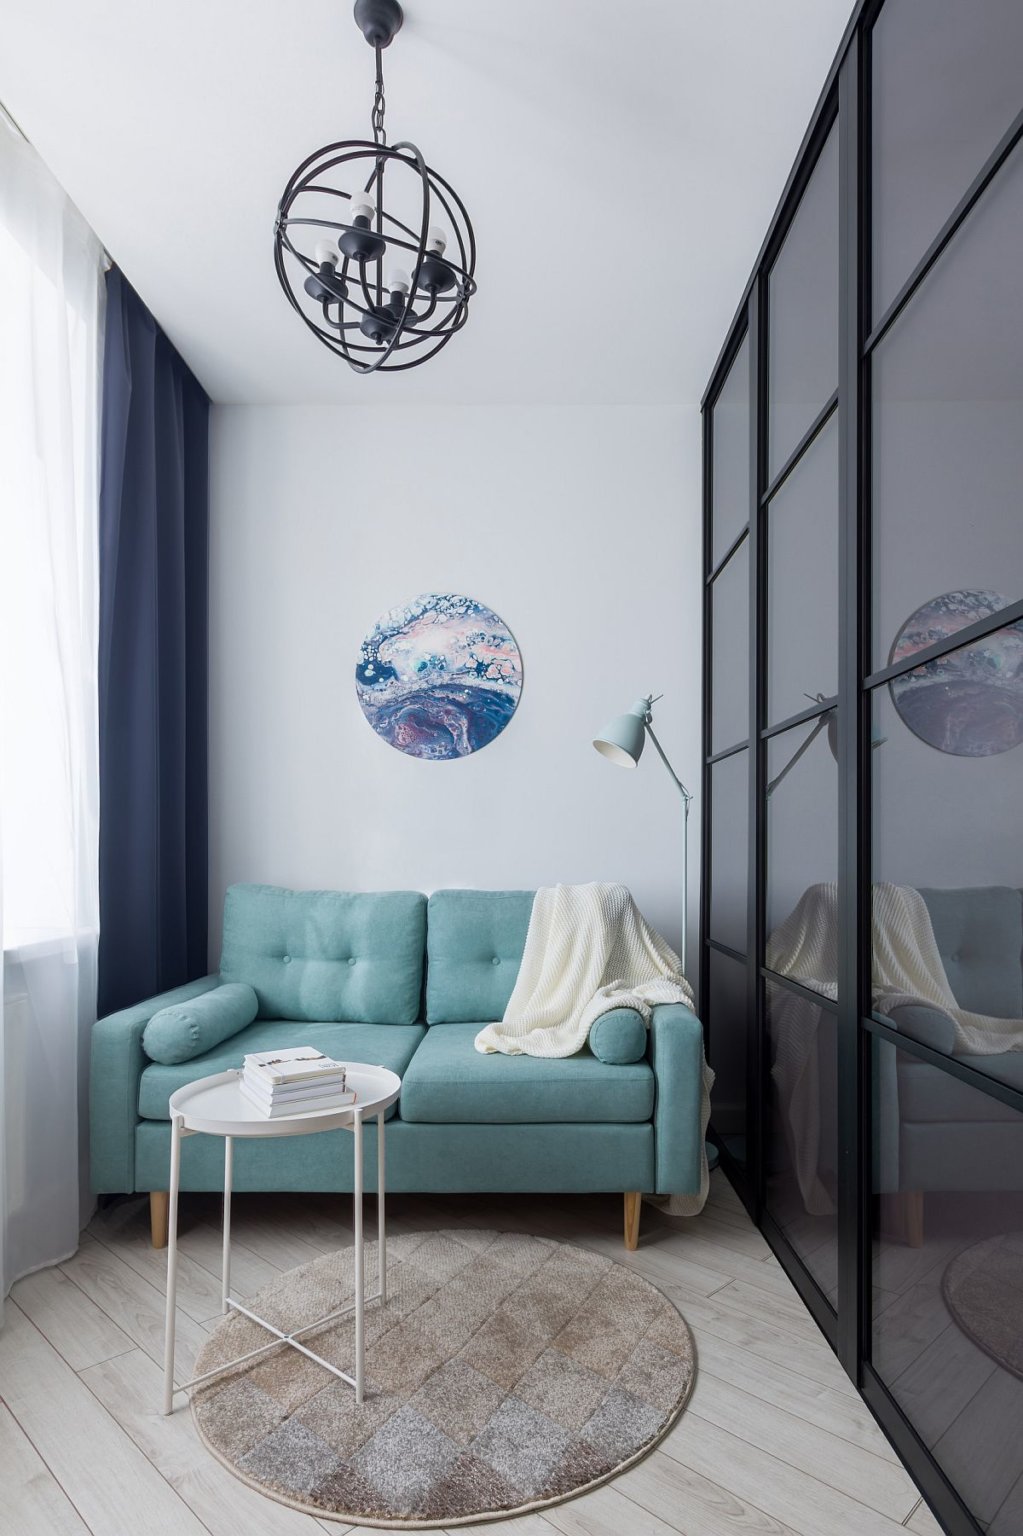 hình ảnh phòng khách căn hộ studio nhỏ với ghế sofa màu xanh da trời, bàn tròn bằng kim loại đặt trên thảm trải